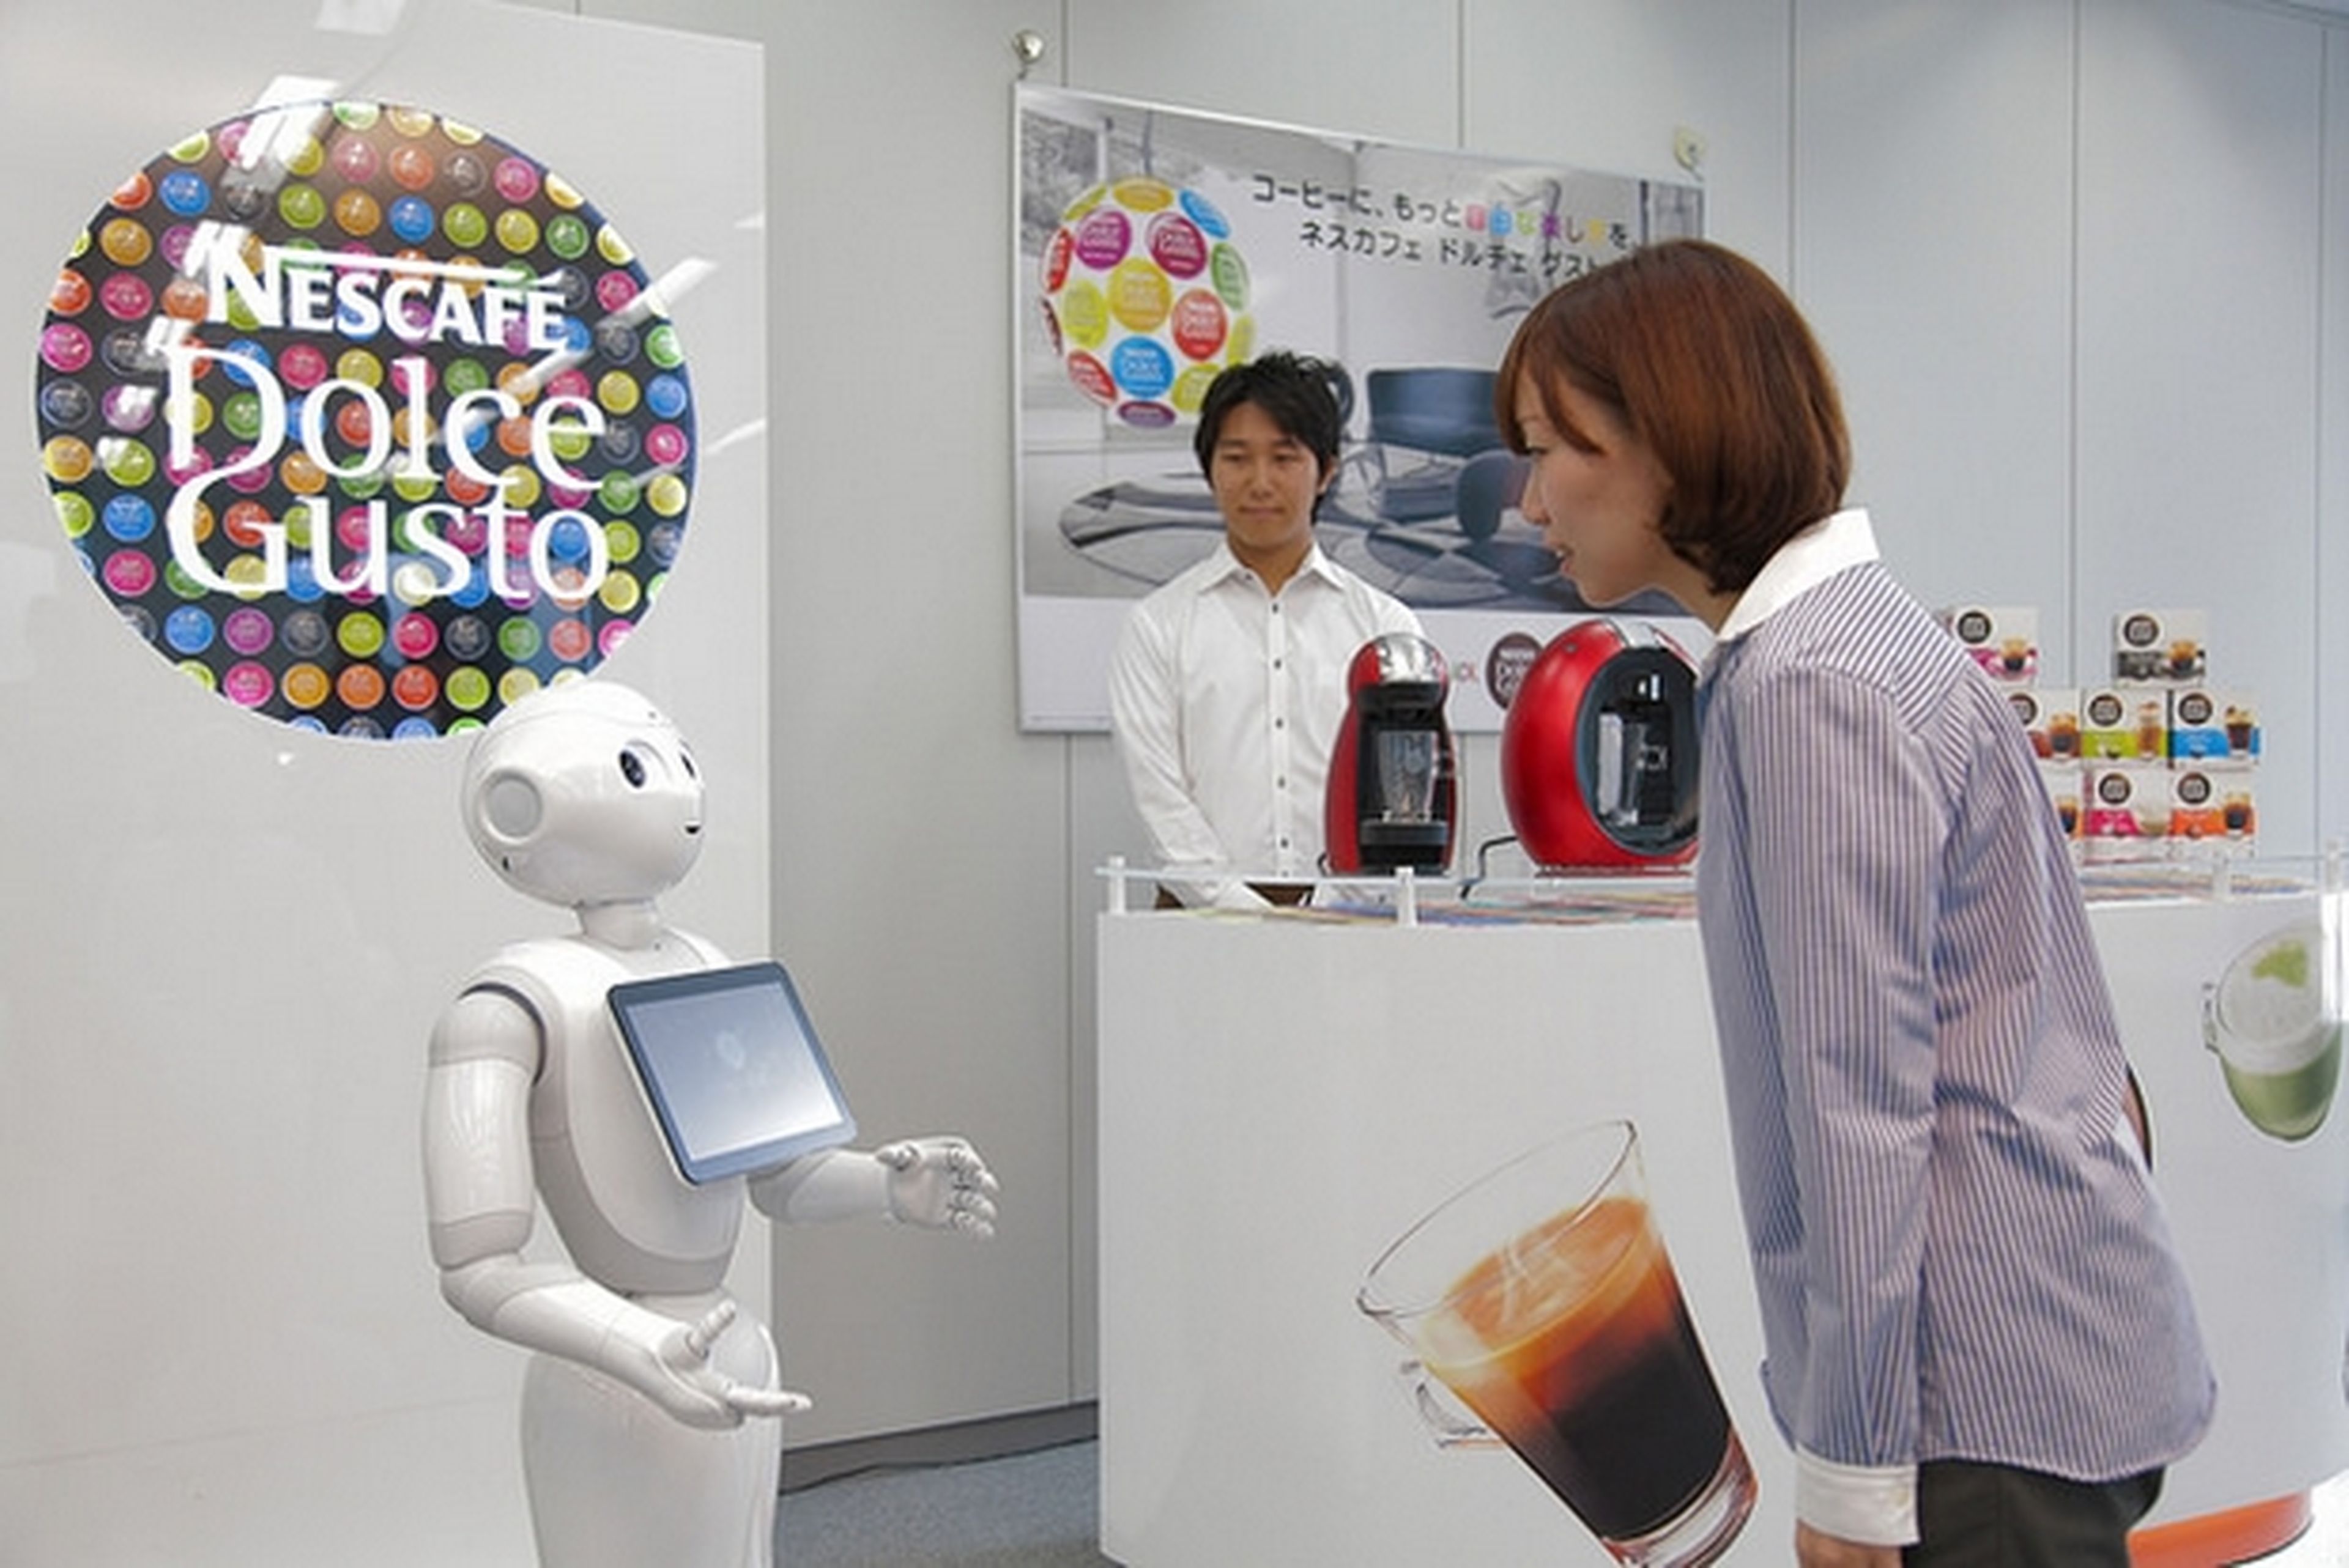 Robot Pepper Nestcafé